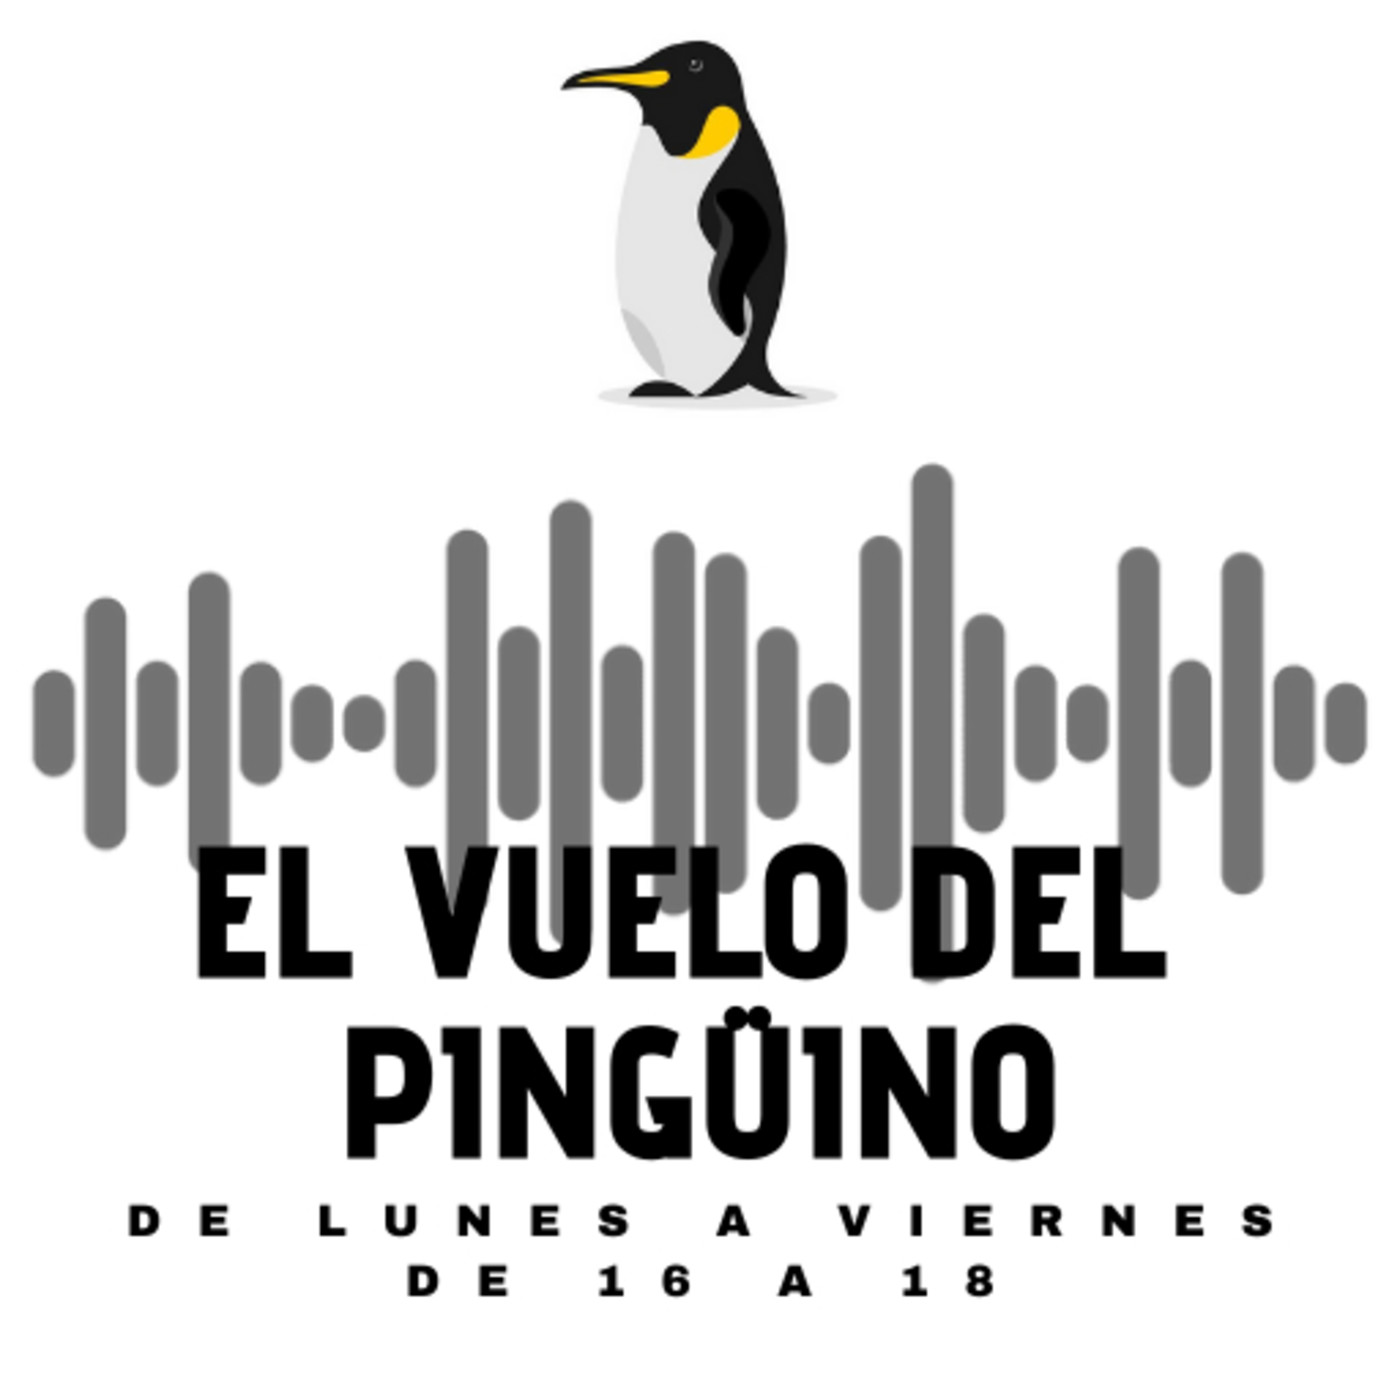 El vuelo del Pingüino - Jueves - Actualidad, humor, cultura y música - 11-02-2021